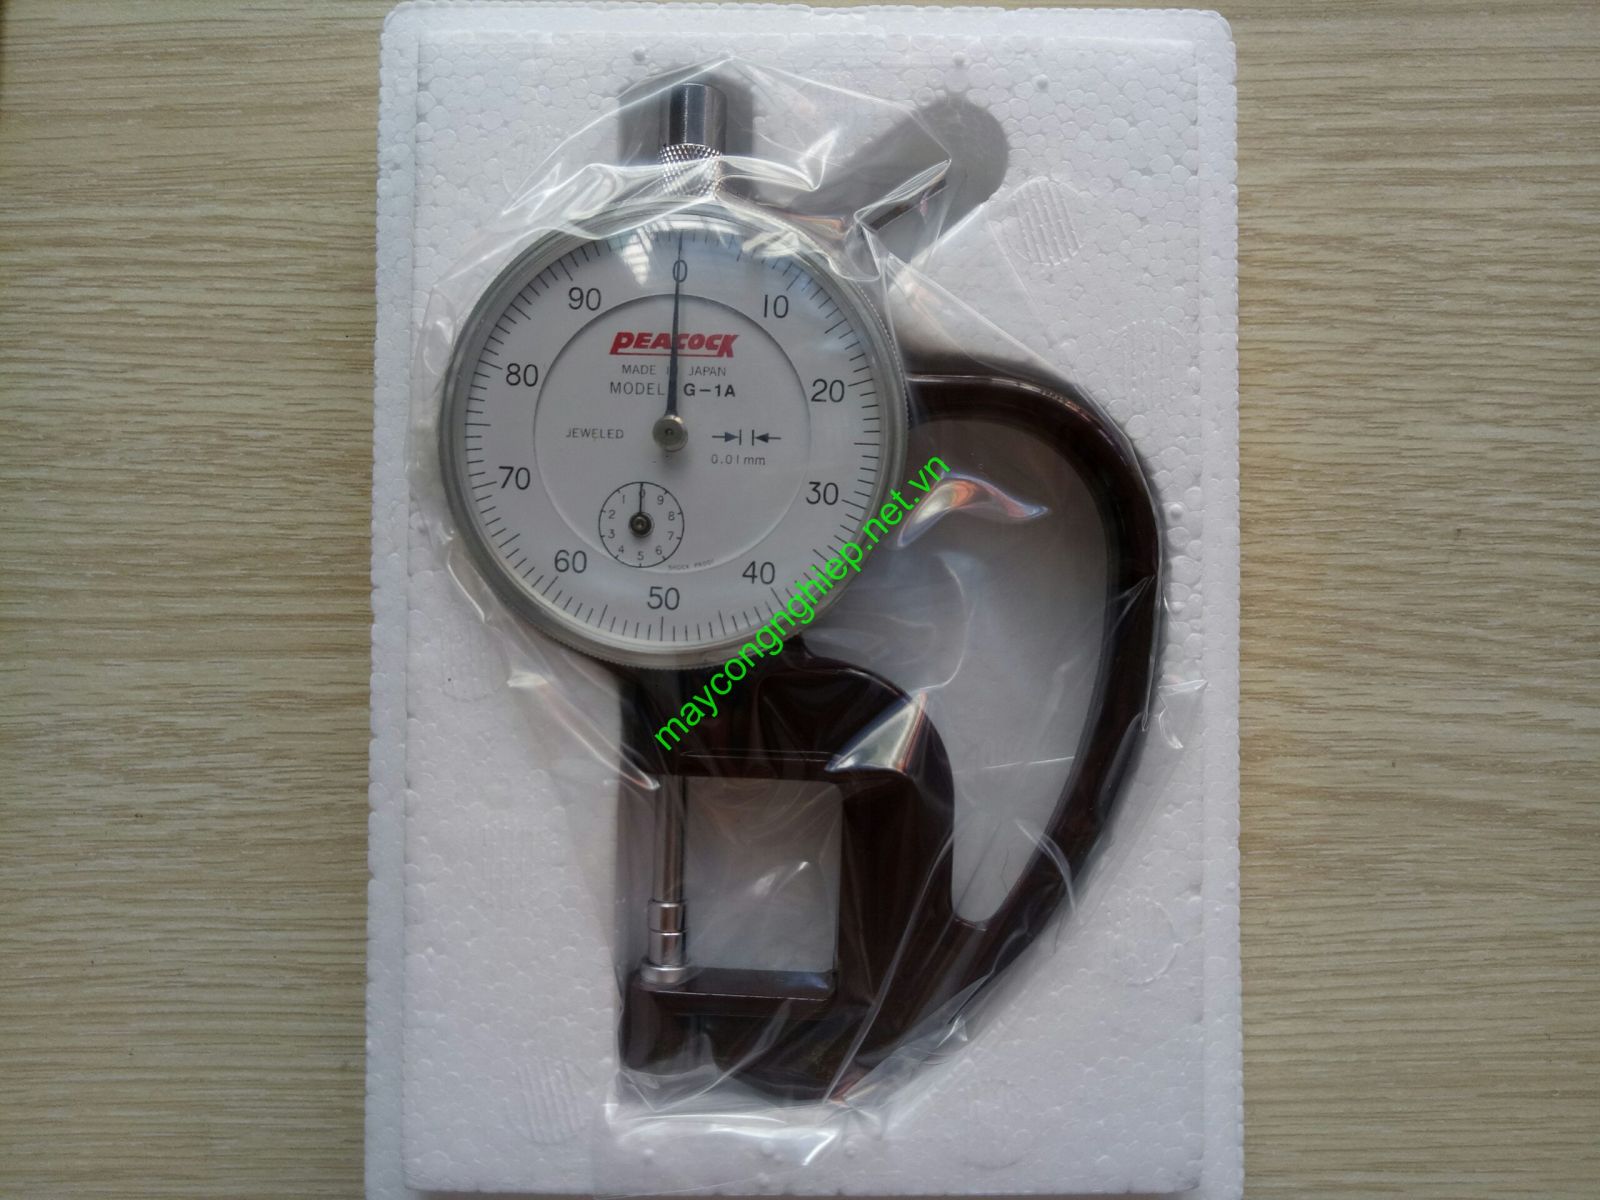 Đồng hồ đo độ dày Peacock G-1A